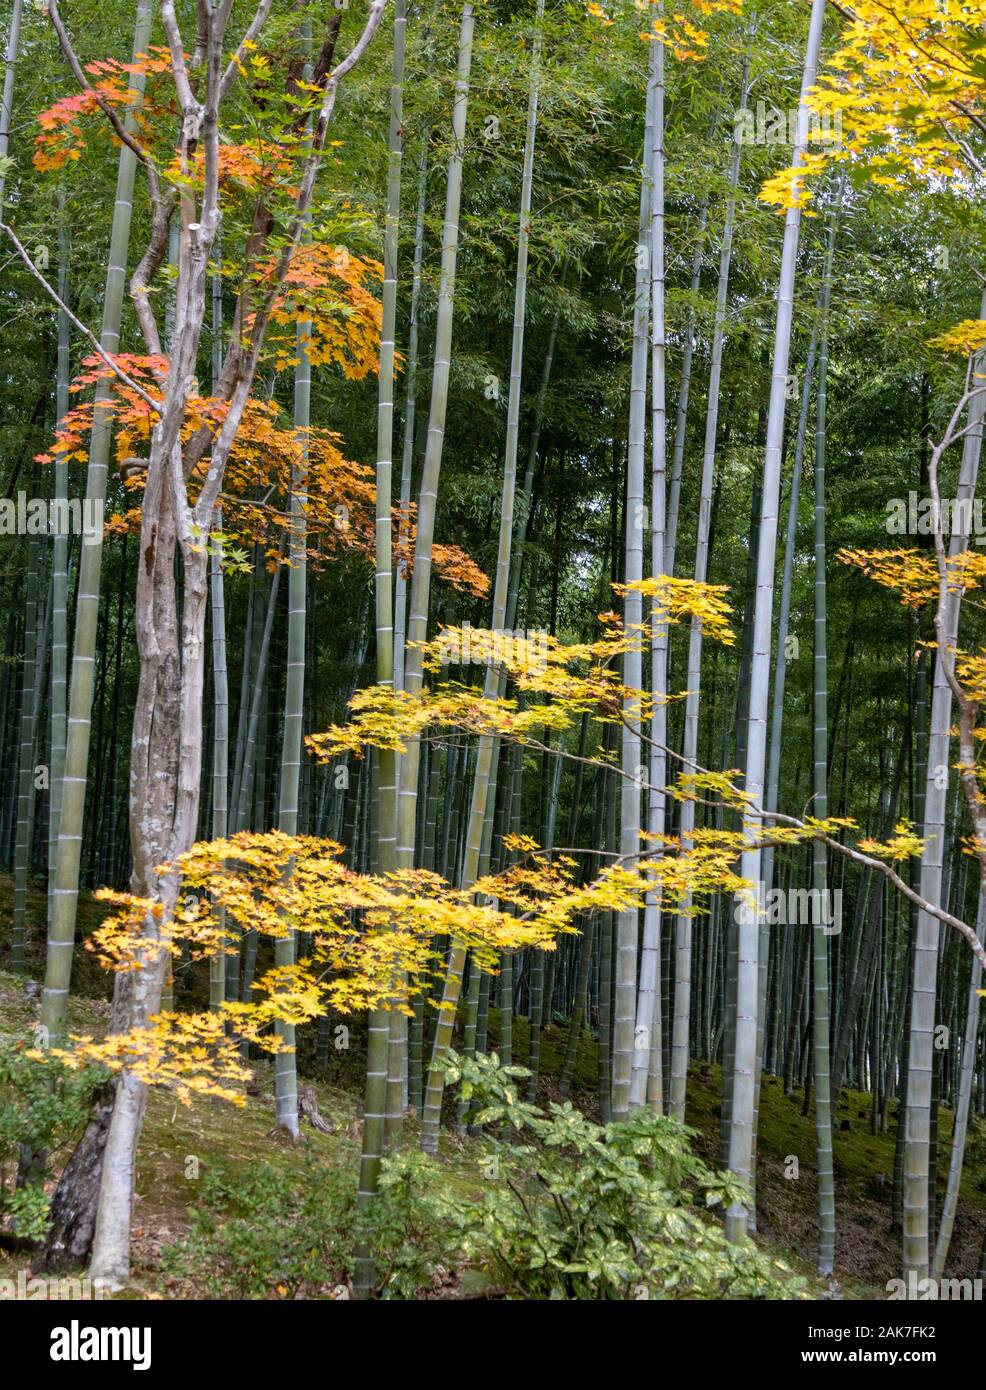 Jardin des arbres et forêt de bambou avec des couleurs de l'automne, à l'origine créé par Musō Soseki, du Tenryū-ji temple bouddhiste Zen, Kyoto, Japon Banque D'Images